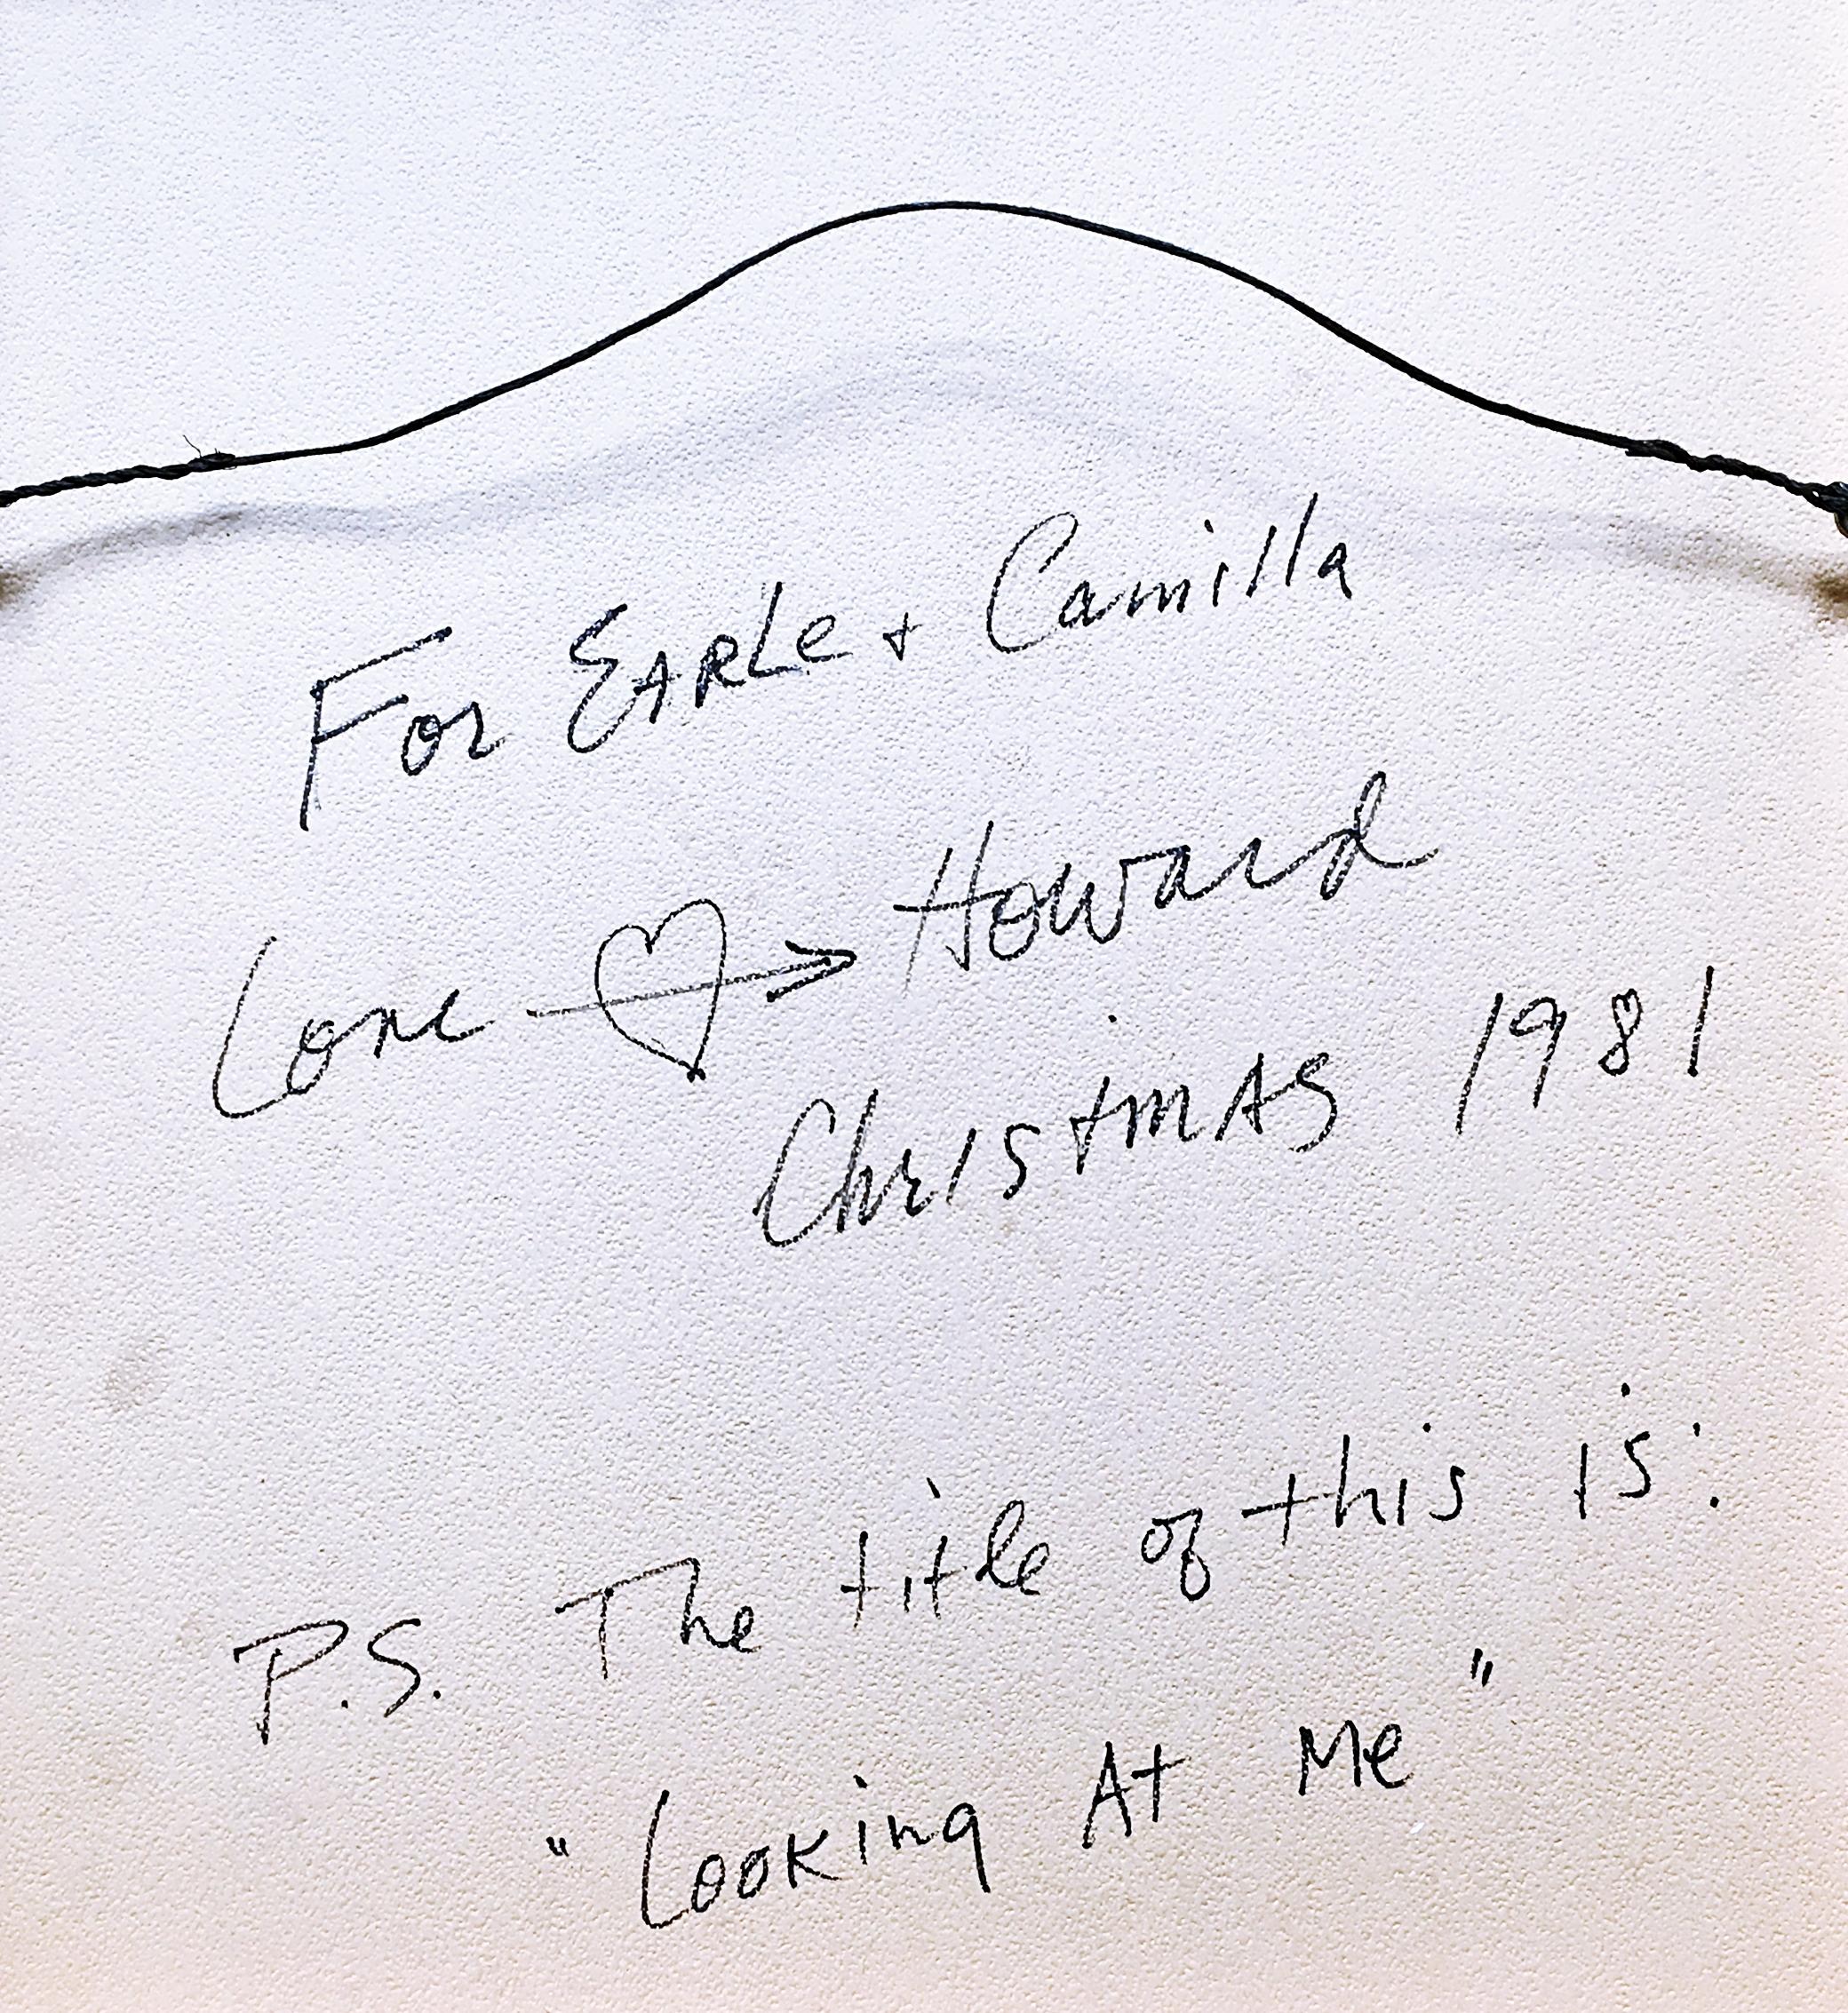 Howard Kanovitz
Looking at Me (signé deux fois avec un dessin de cœur et une inscription), 1981
Lithographie couleur sur papier vélin
Épreuve d'artiste (AP) signée et annotée au crayon par l'artiste au recto. Signature à l'encre et inscription au